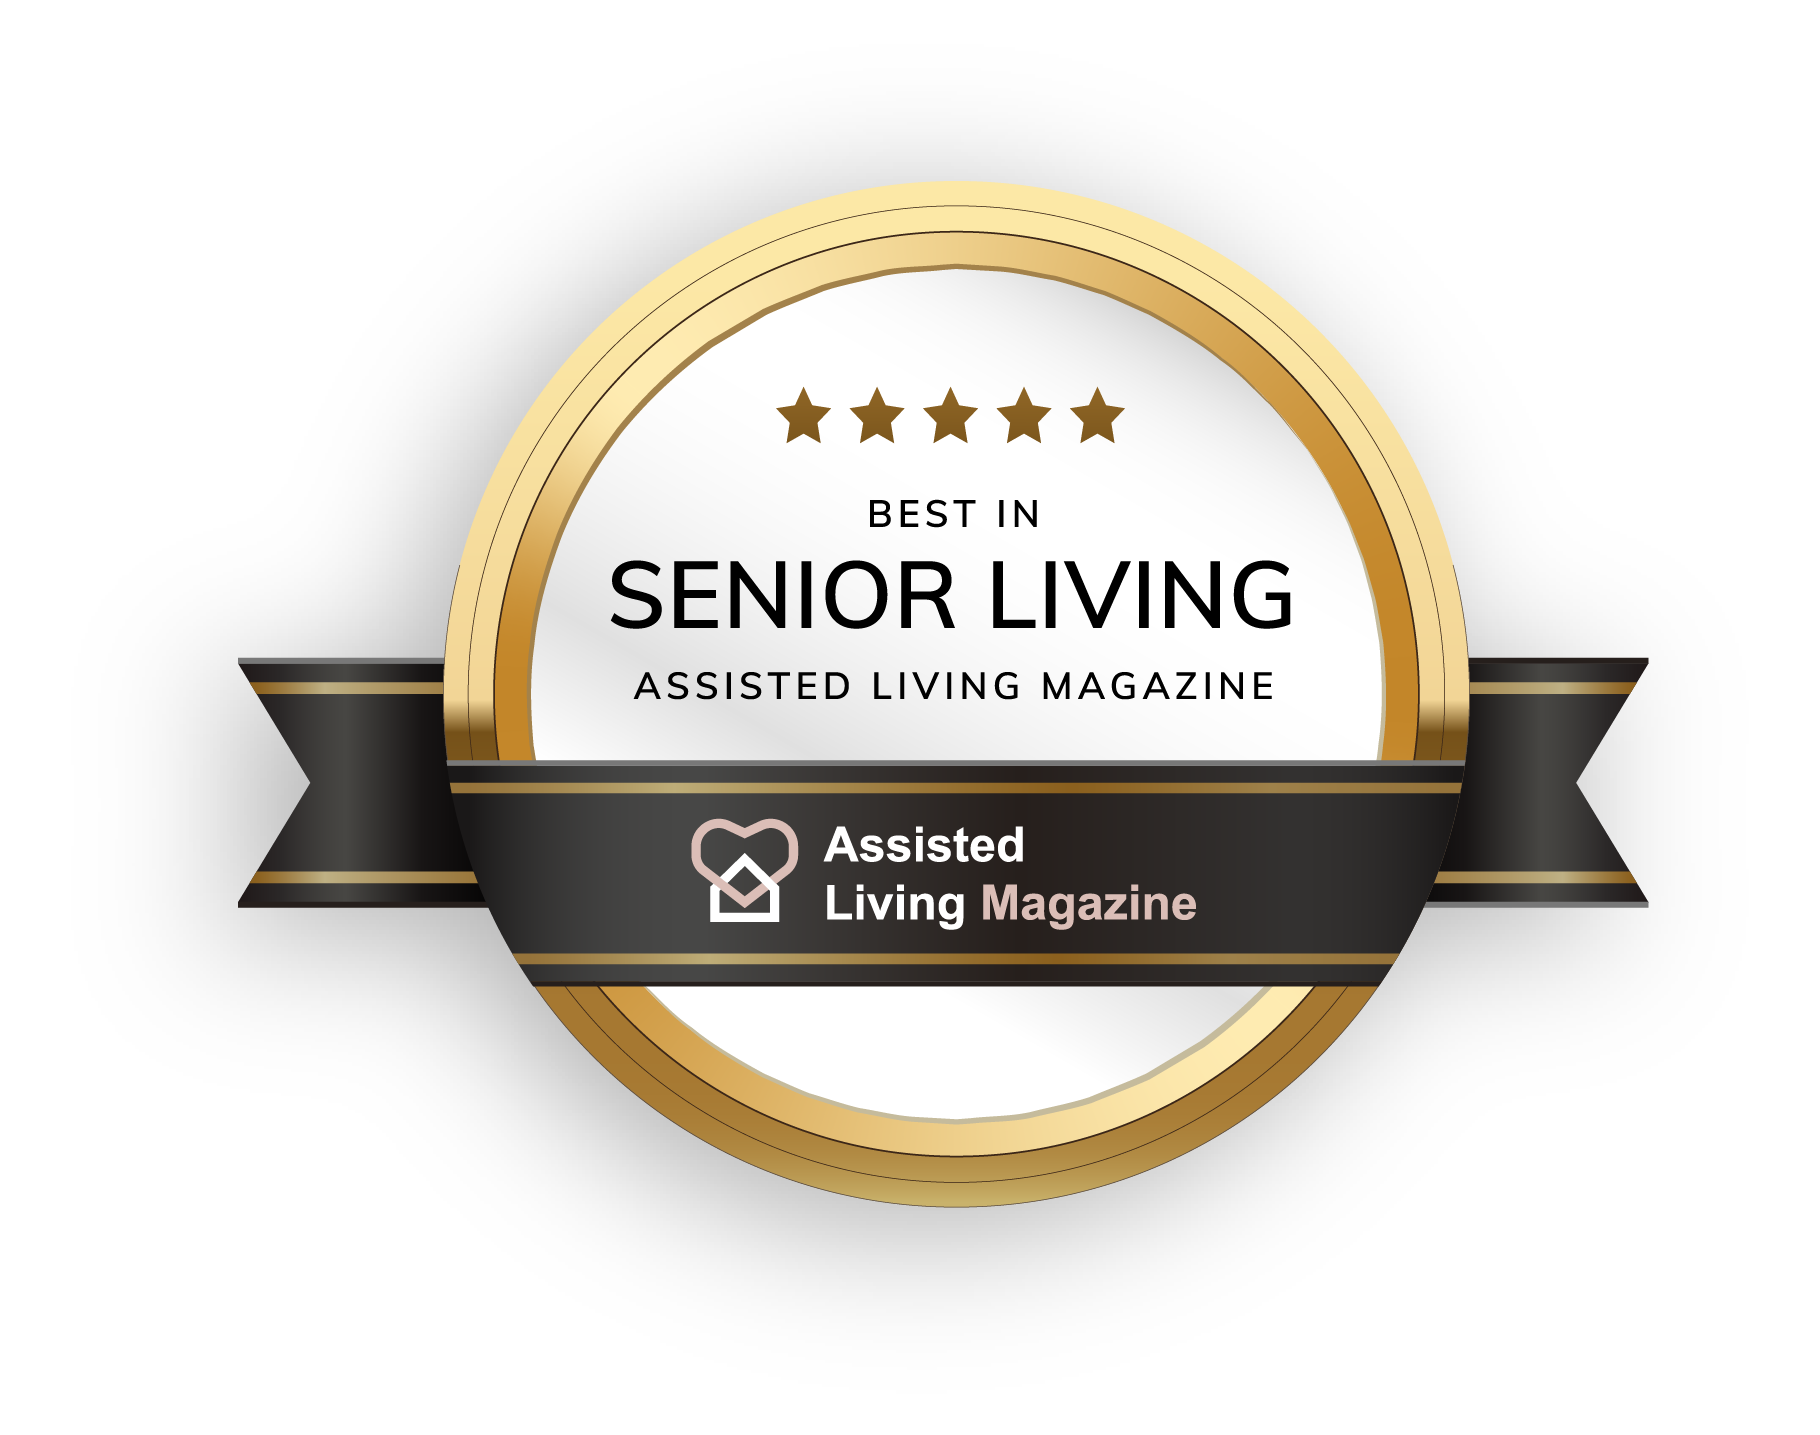 Best in Senior Living Assisted Living Magazine Badge